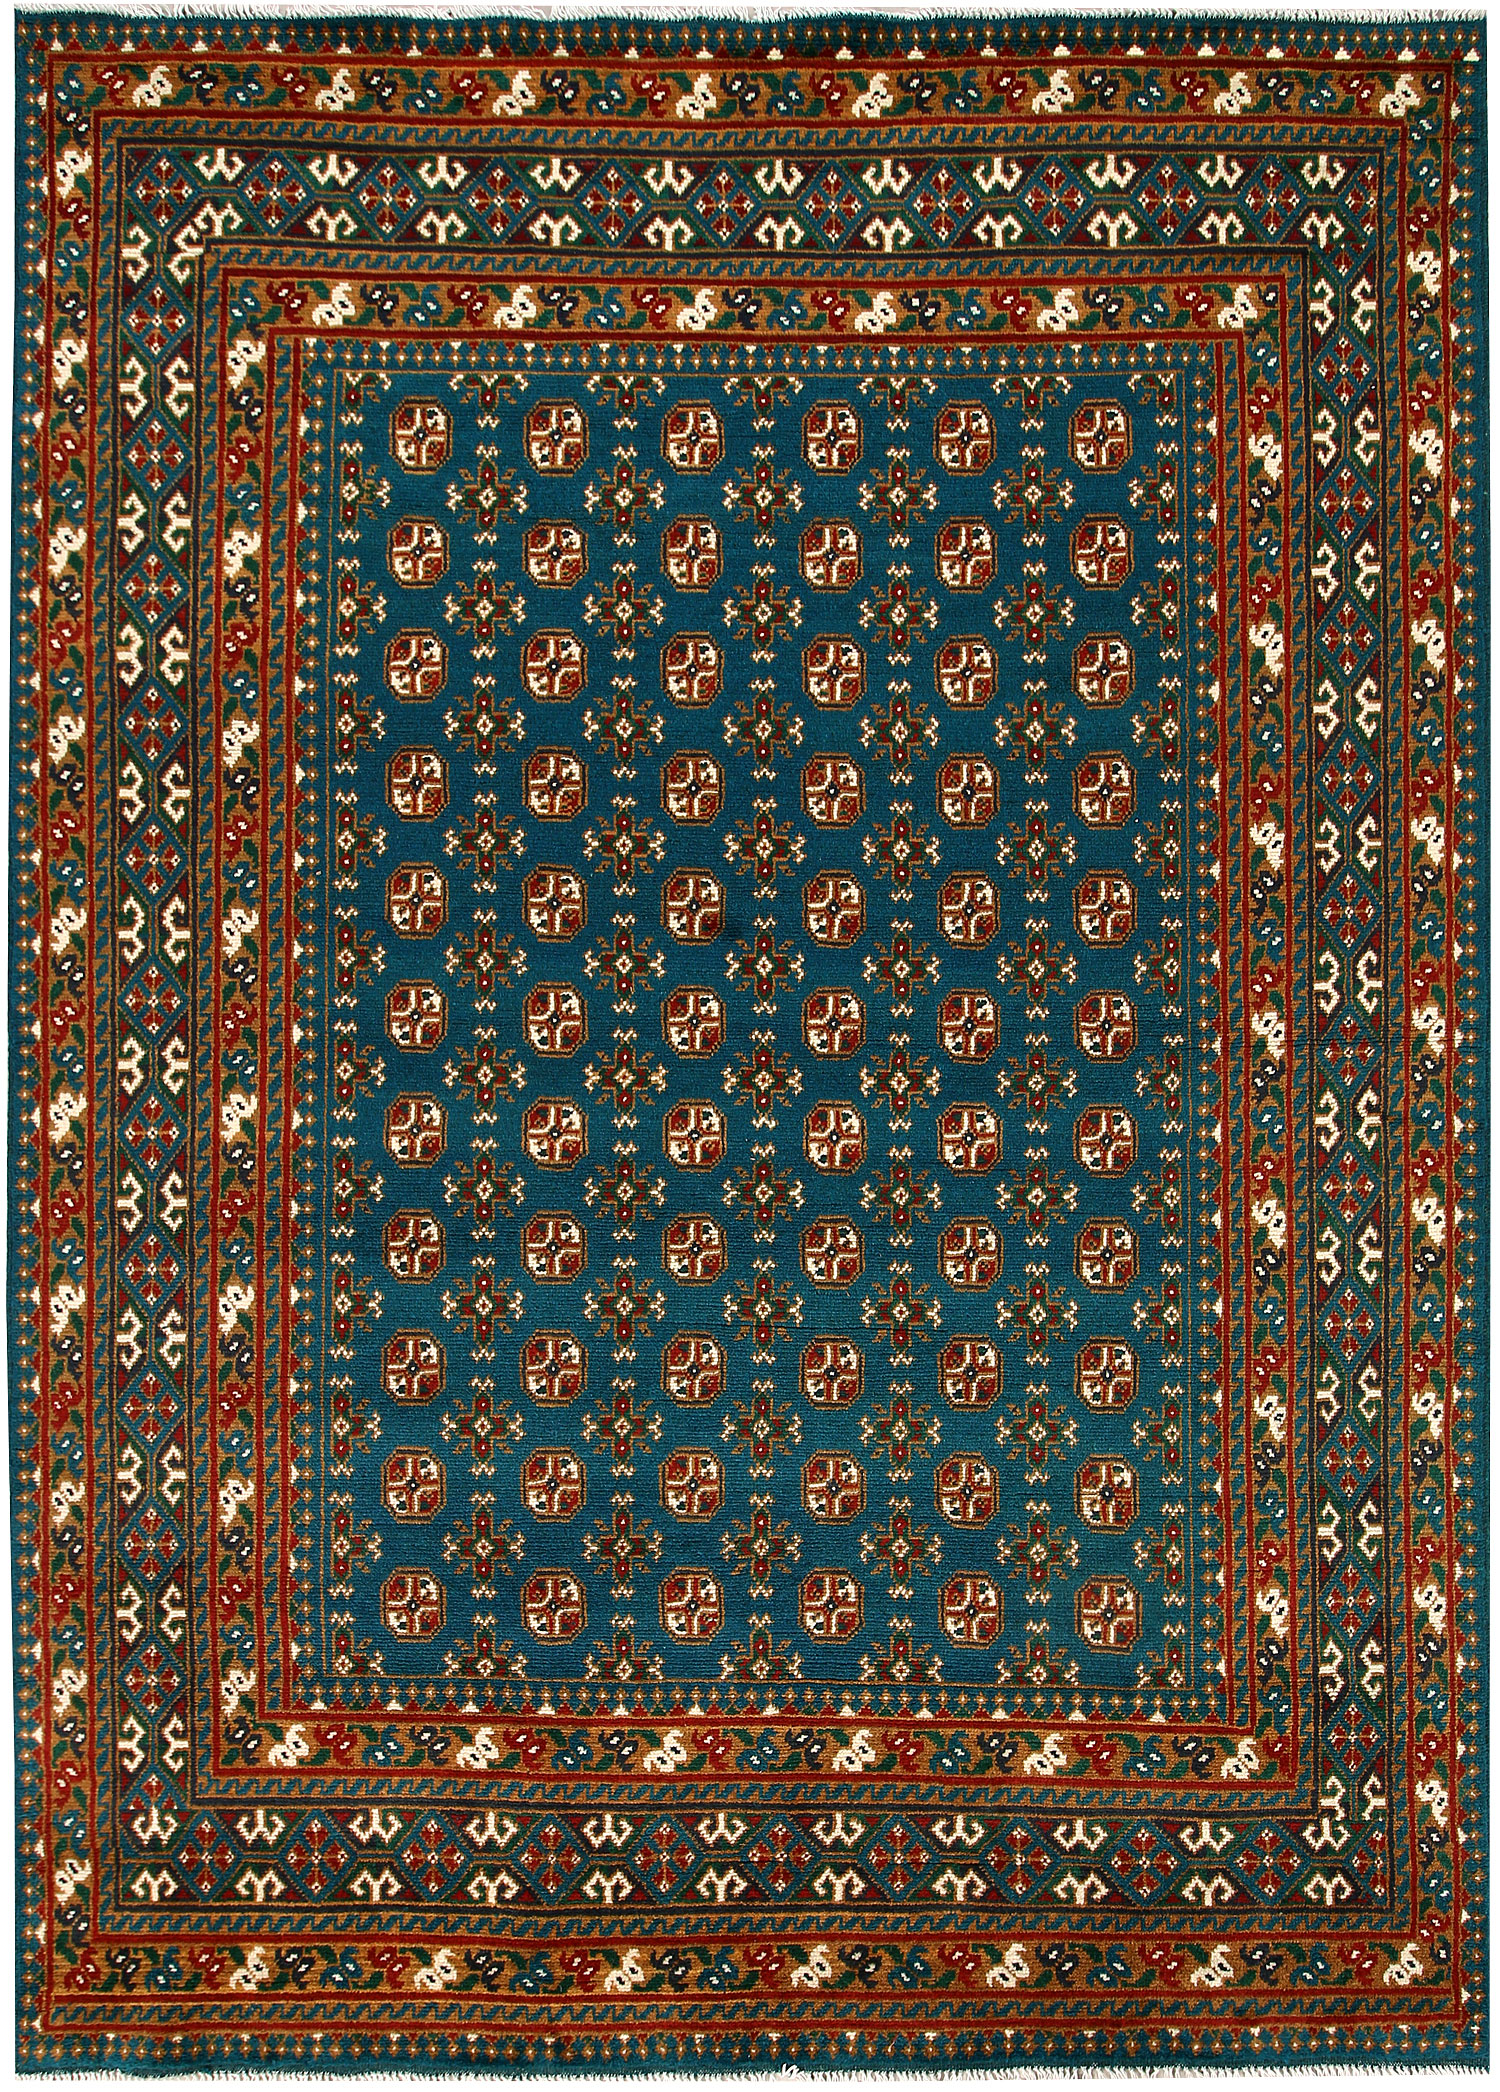 Afghan Tribal Rugs